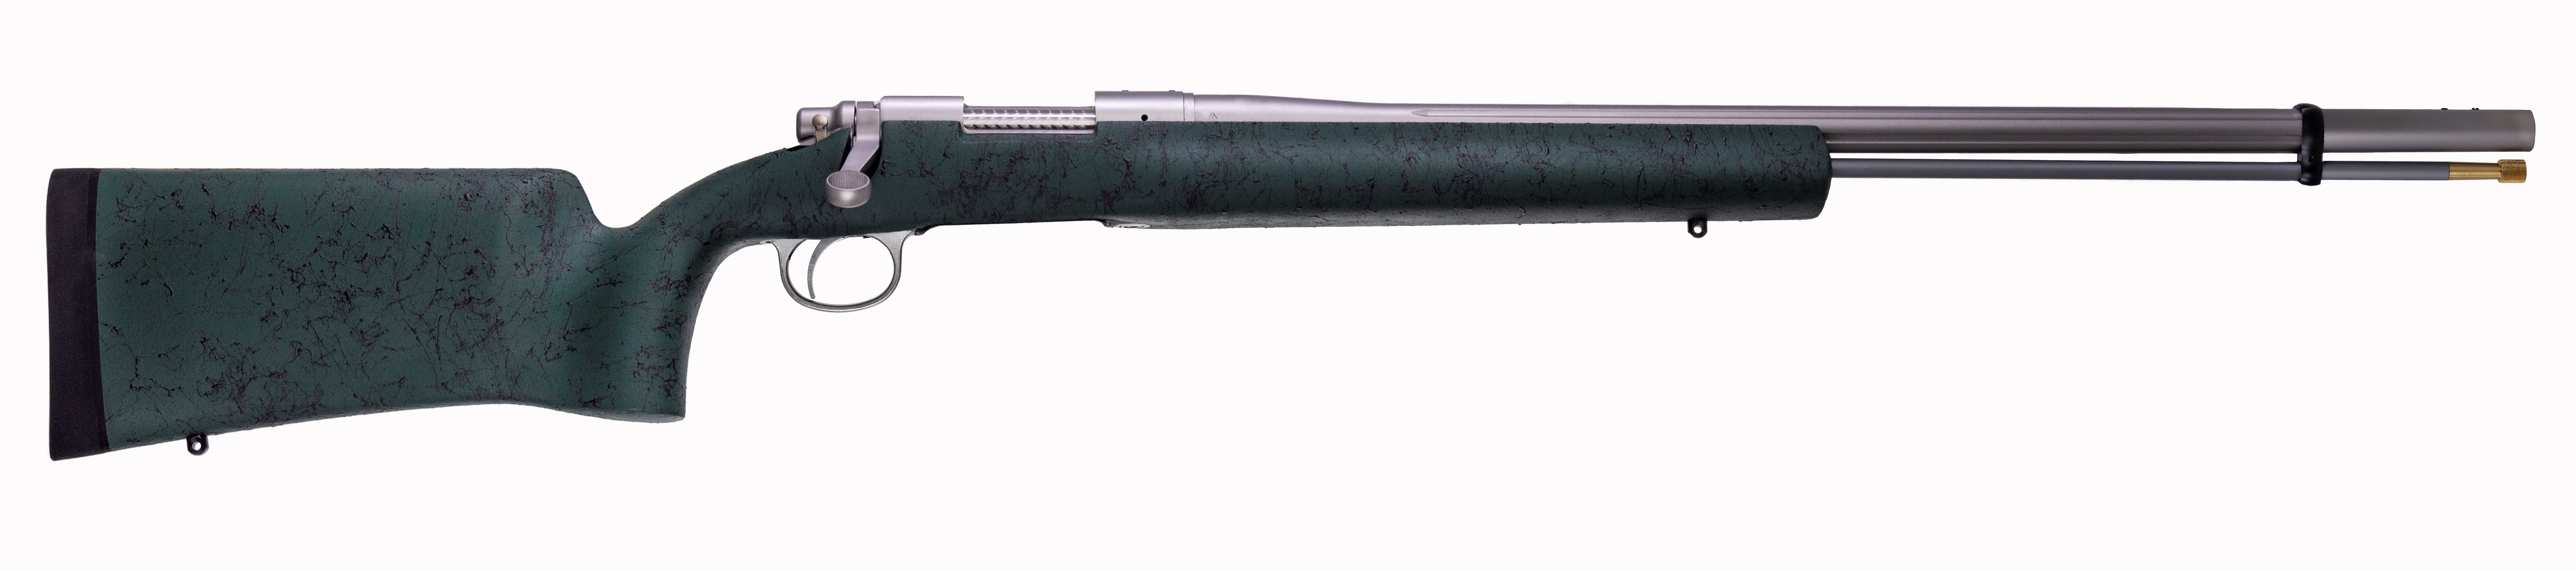 Remington Model 700TM Ultimate Muzzleloader (86964)